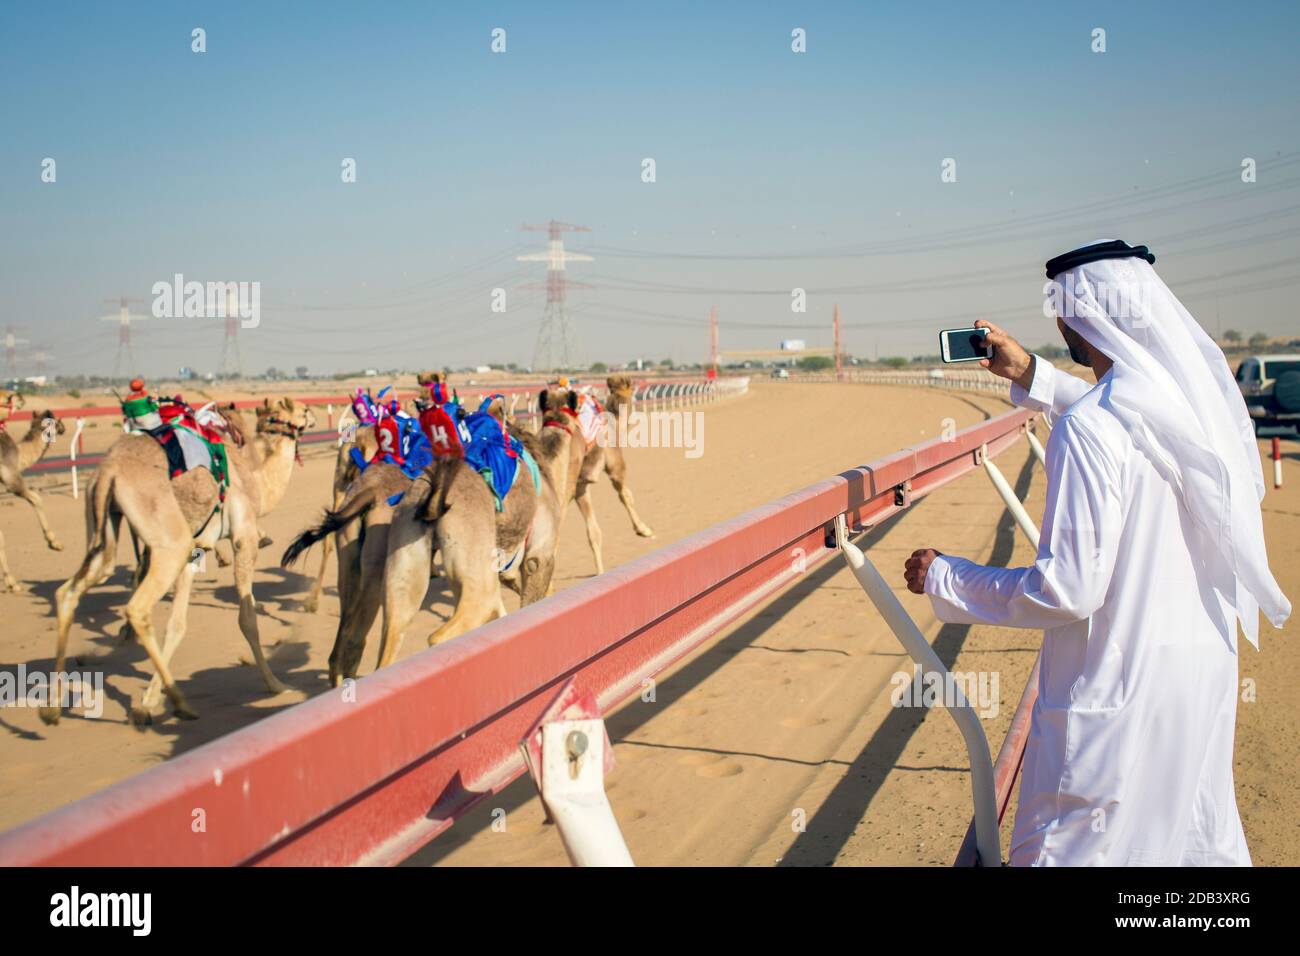 Vereinigte Arabische Emirate / Al Dhaid / Arabische Männer fotografieren mit seinem Handy beim Camel Race in der zentralen Region des Emirats Sharjah. Stockfoto